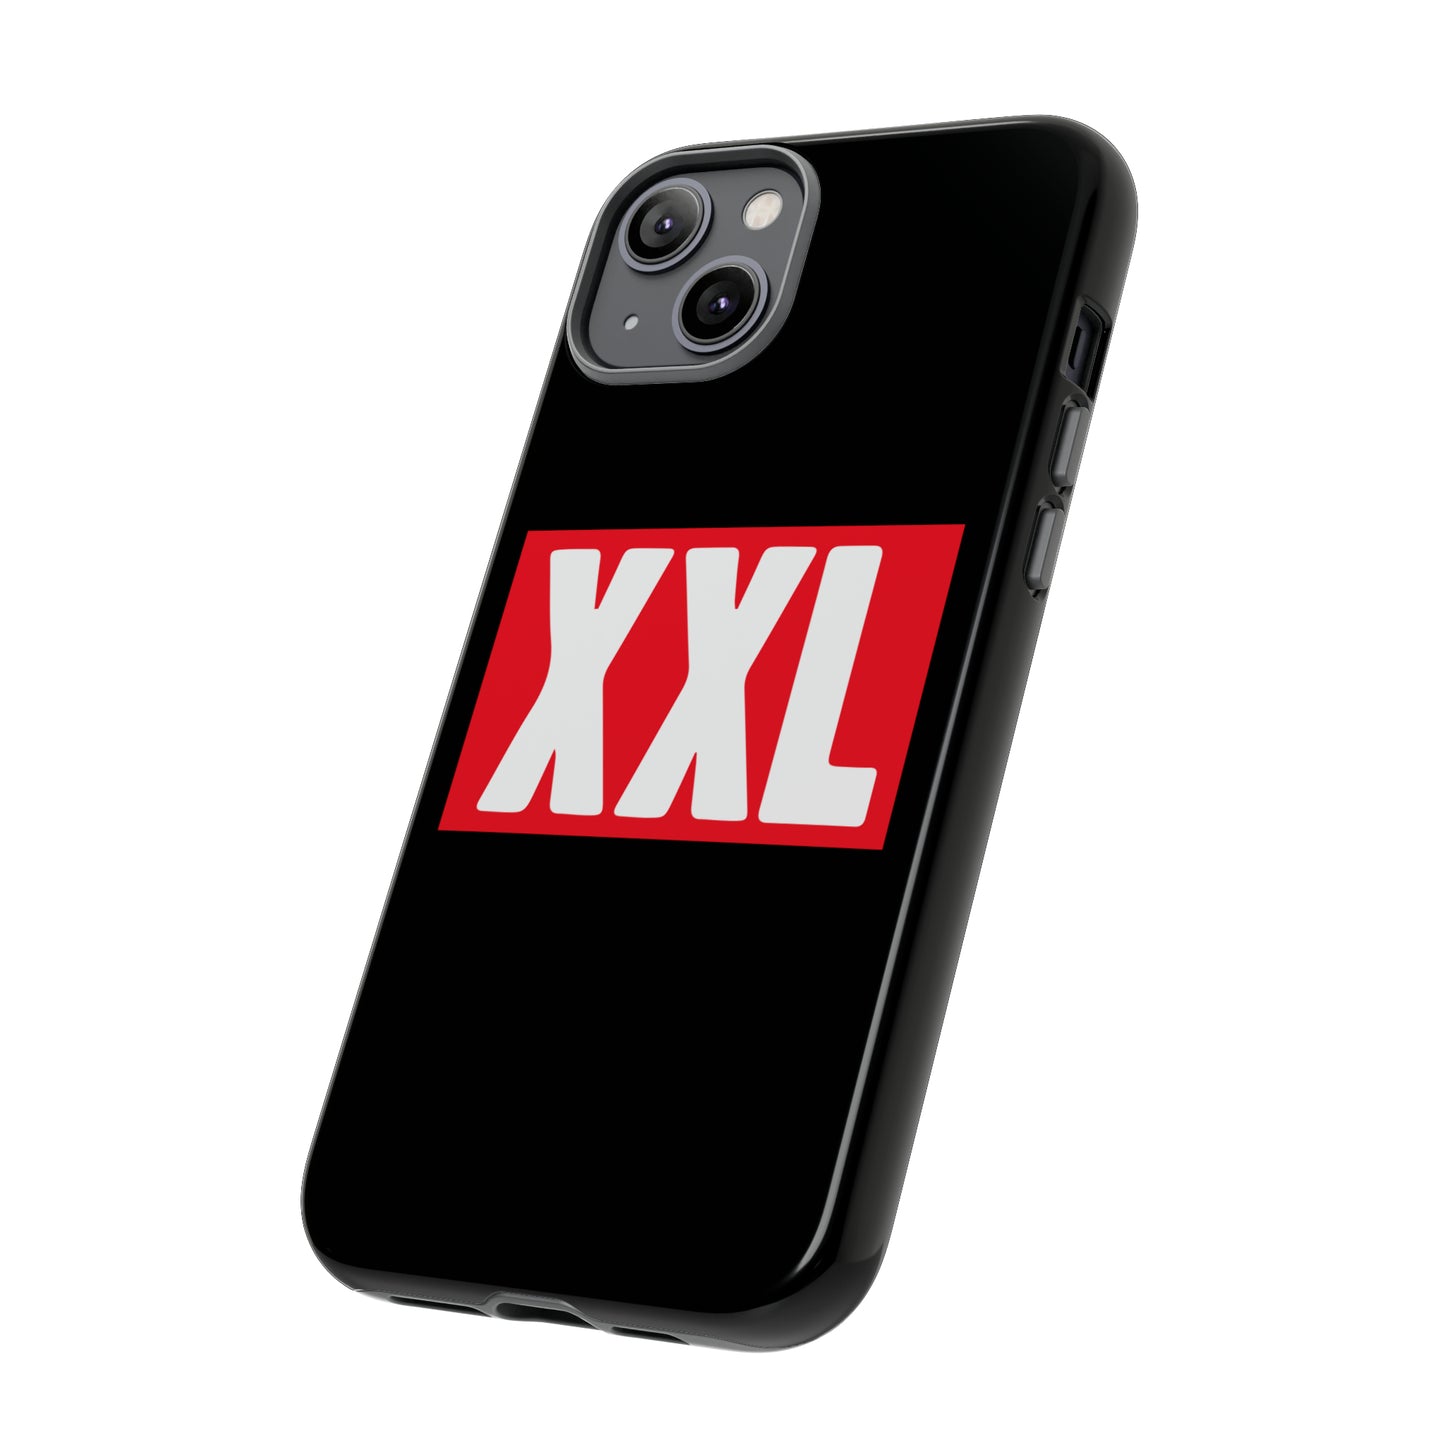 XXL Logo Phone Cases